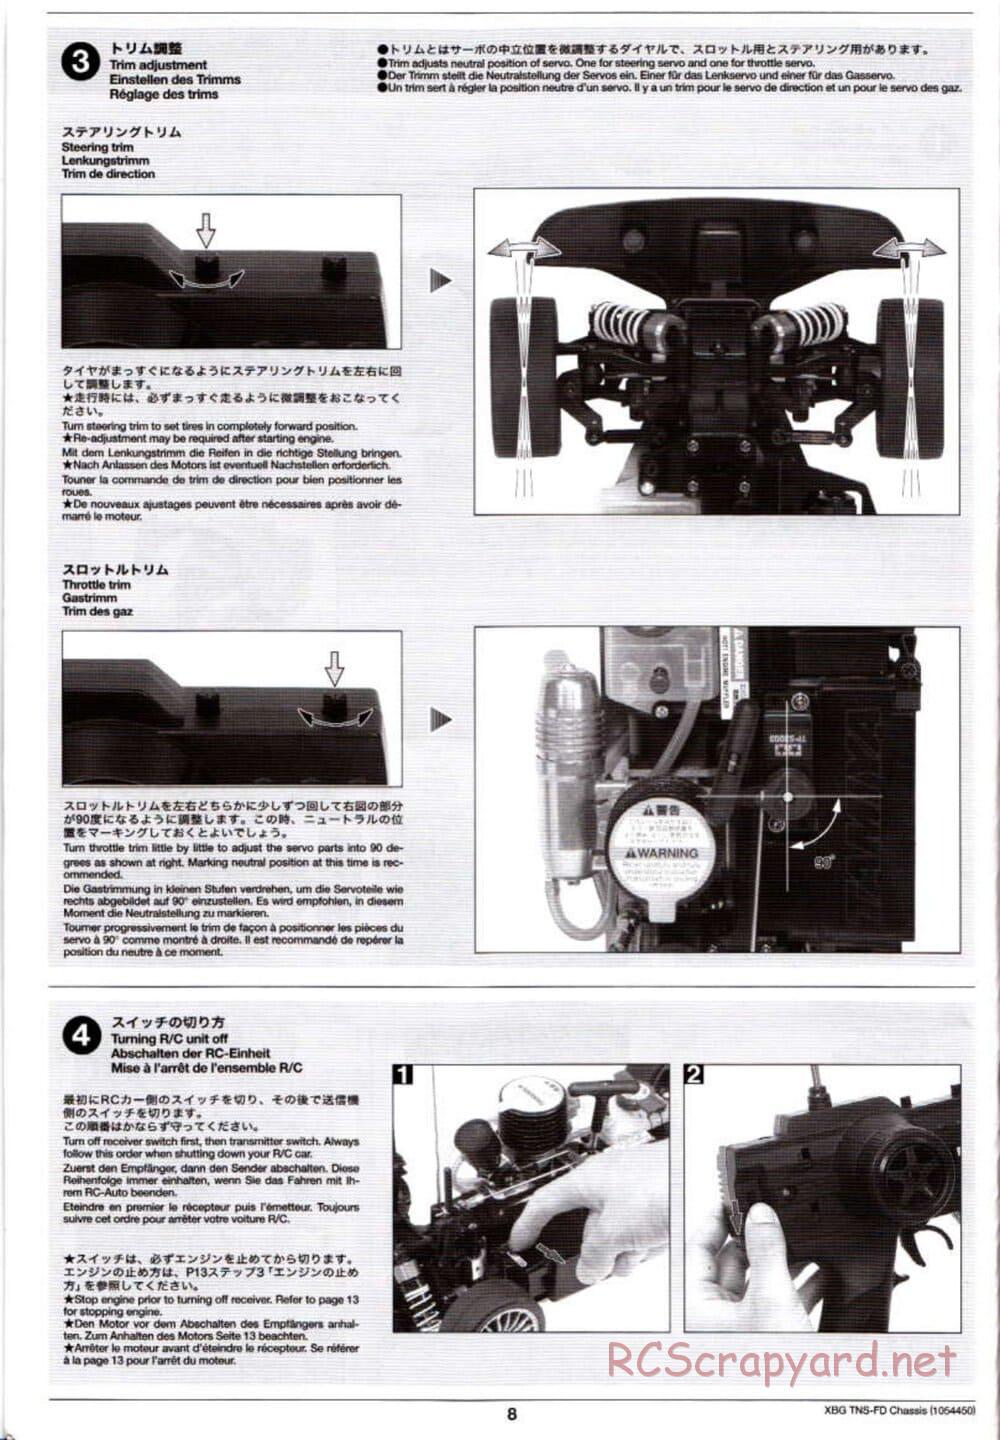 Tamiya - TNS-FD Chassis - Manual - Page 8